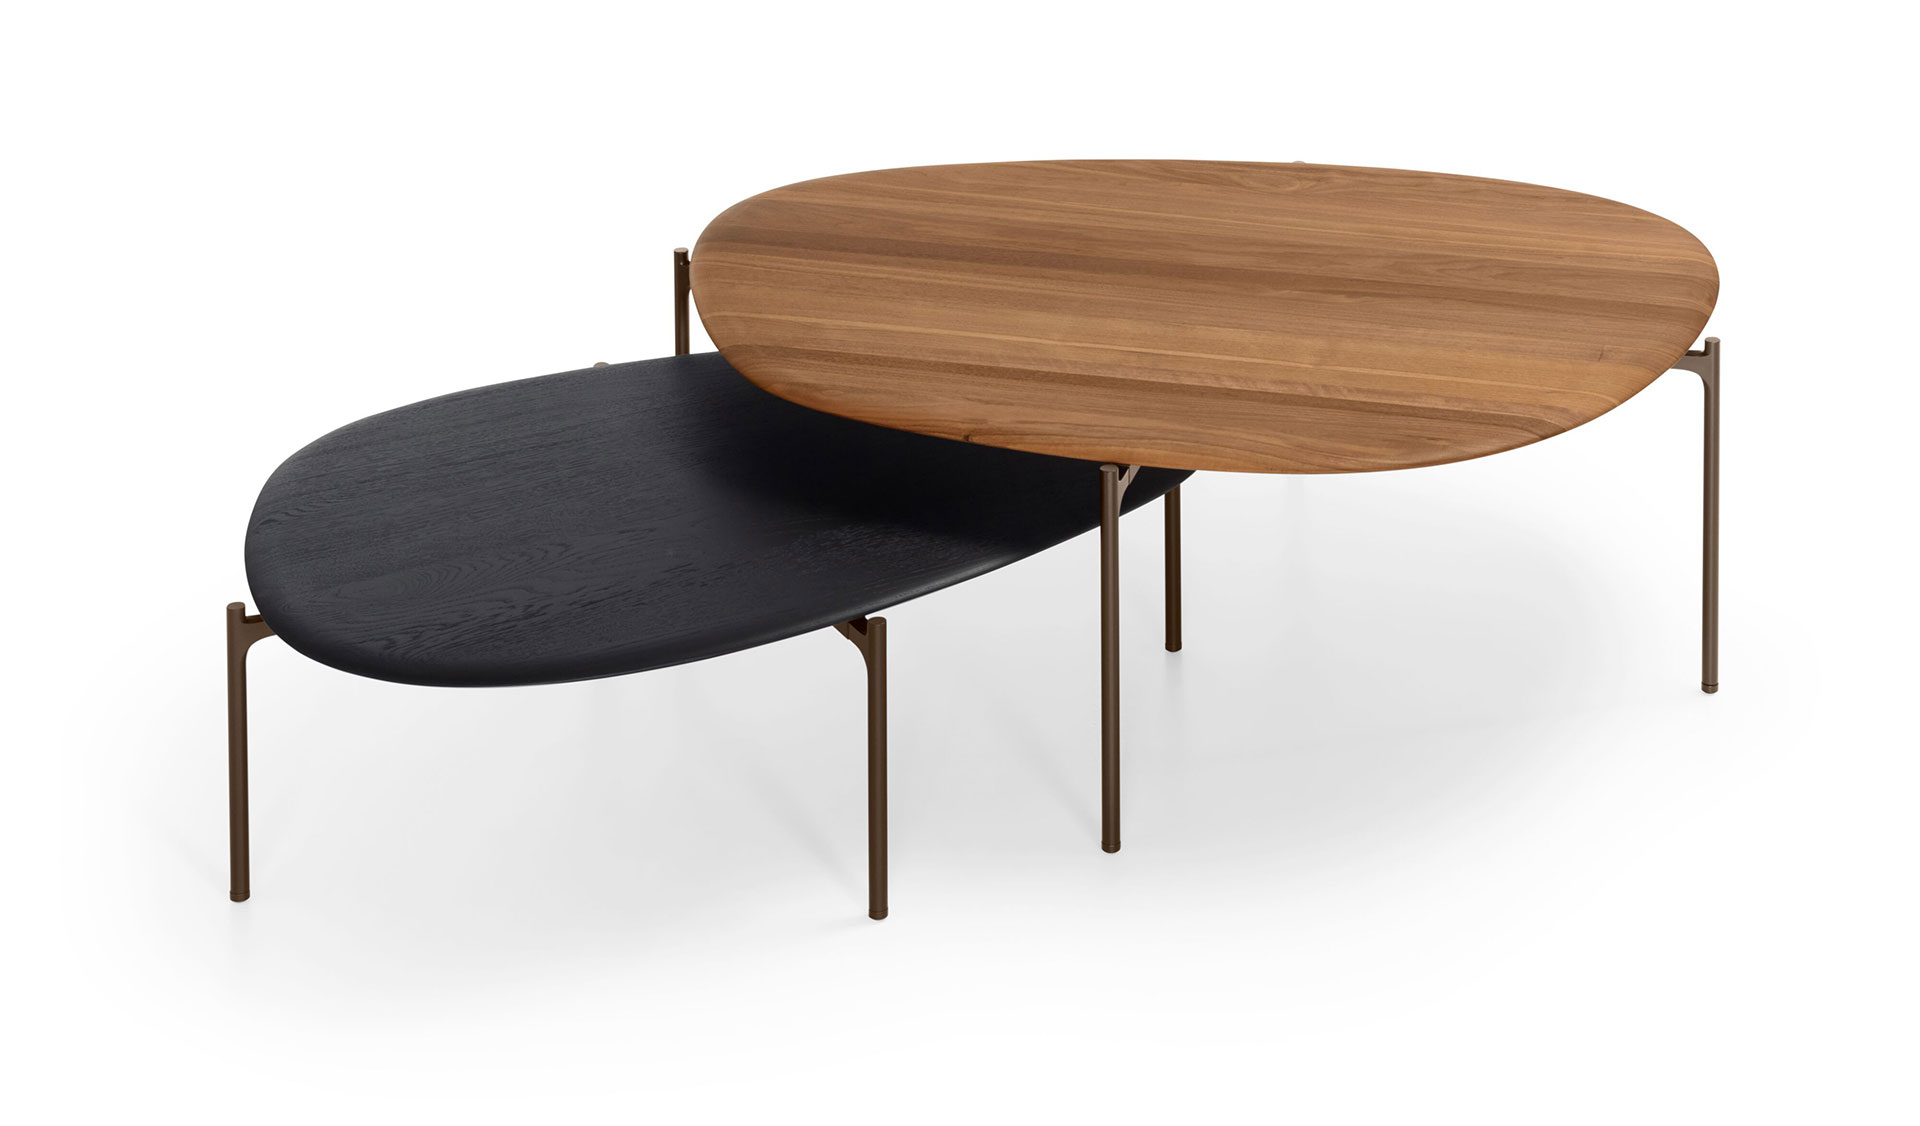 ISHINO Wood Table